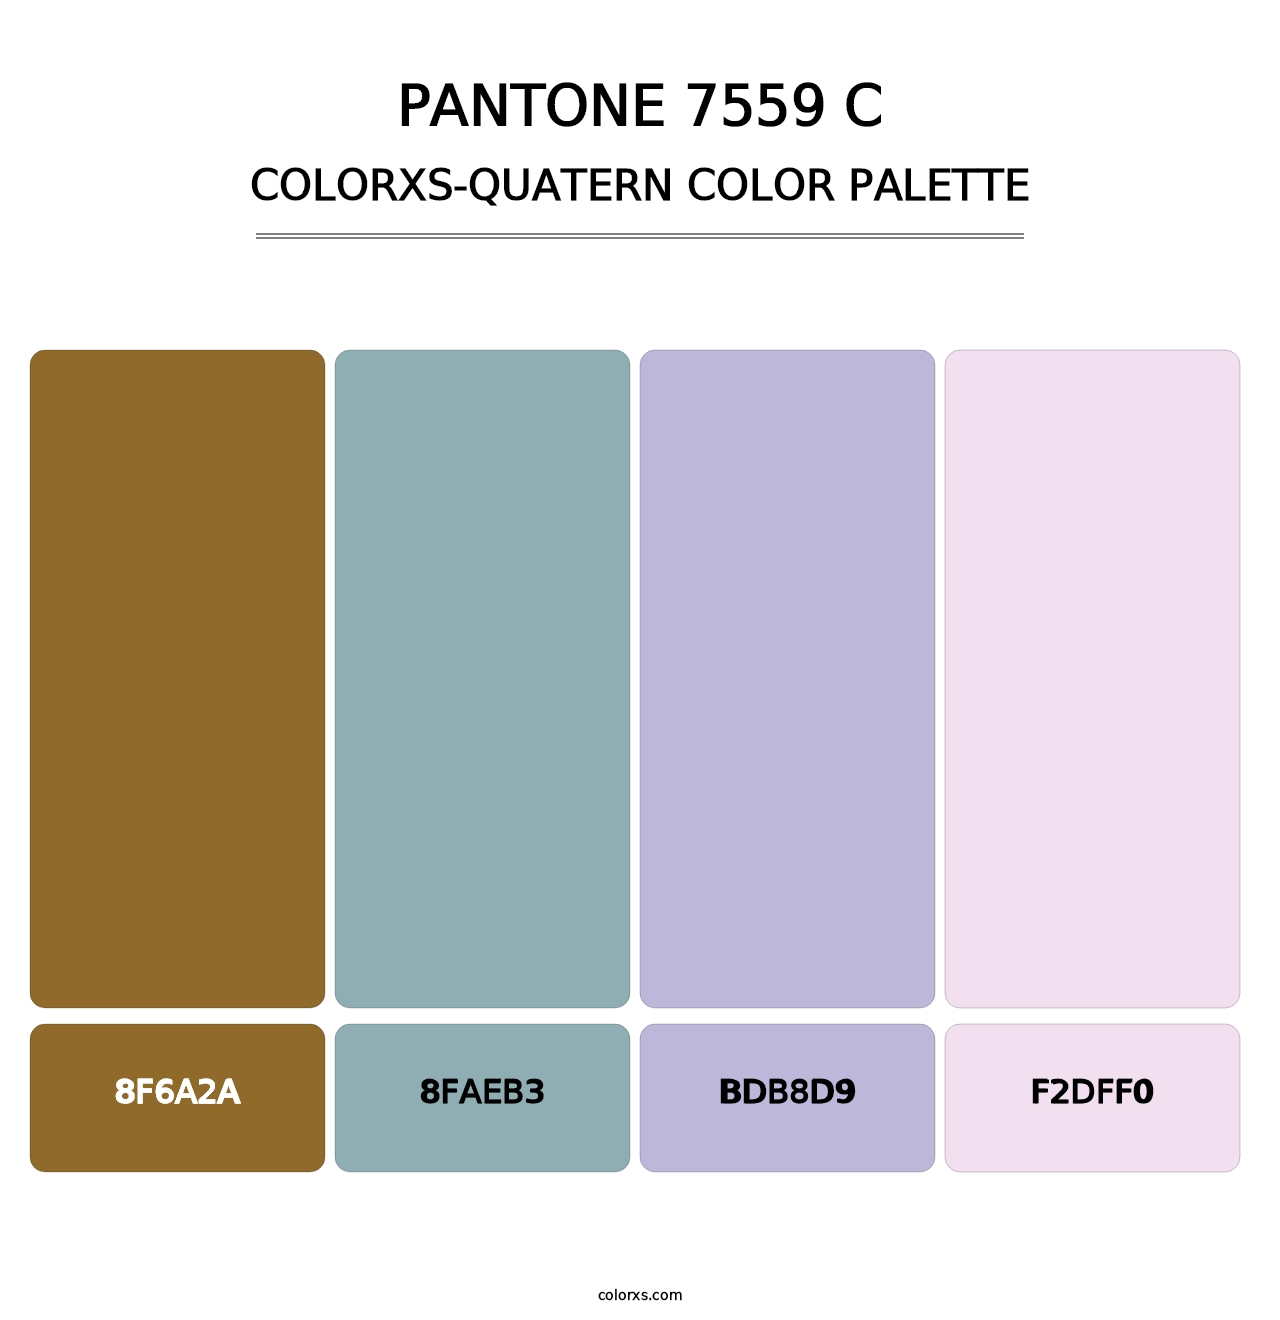 PANTONE 7559 C - Colorxs Quatern Palette